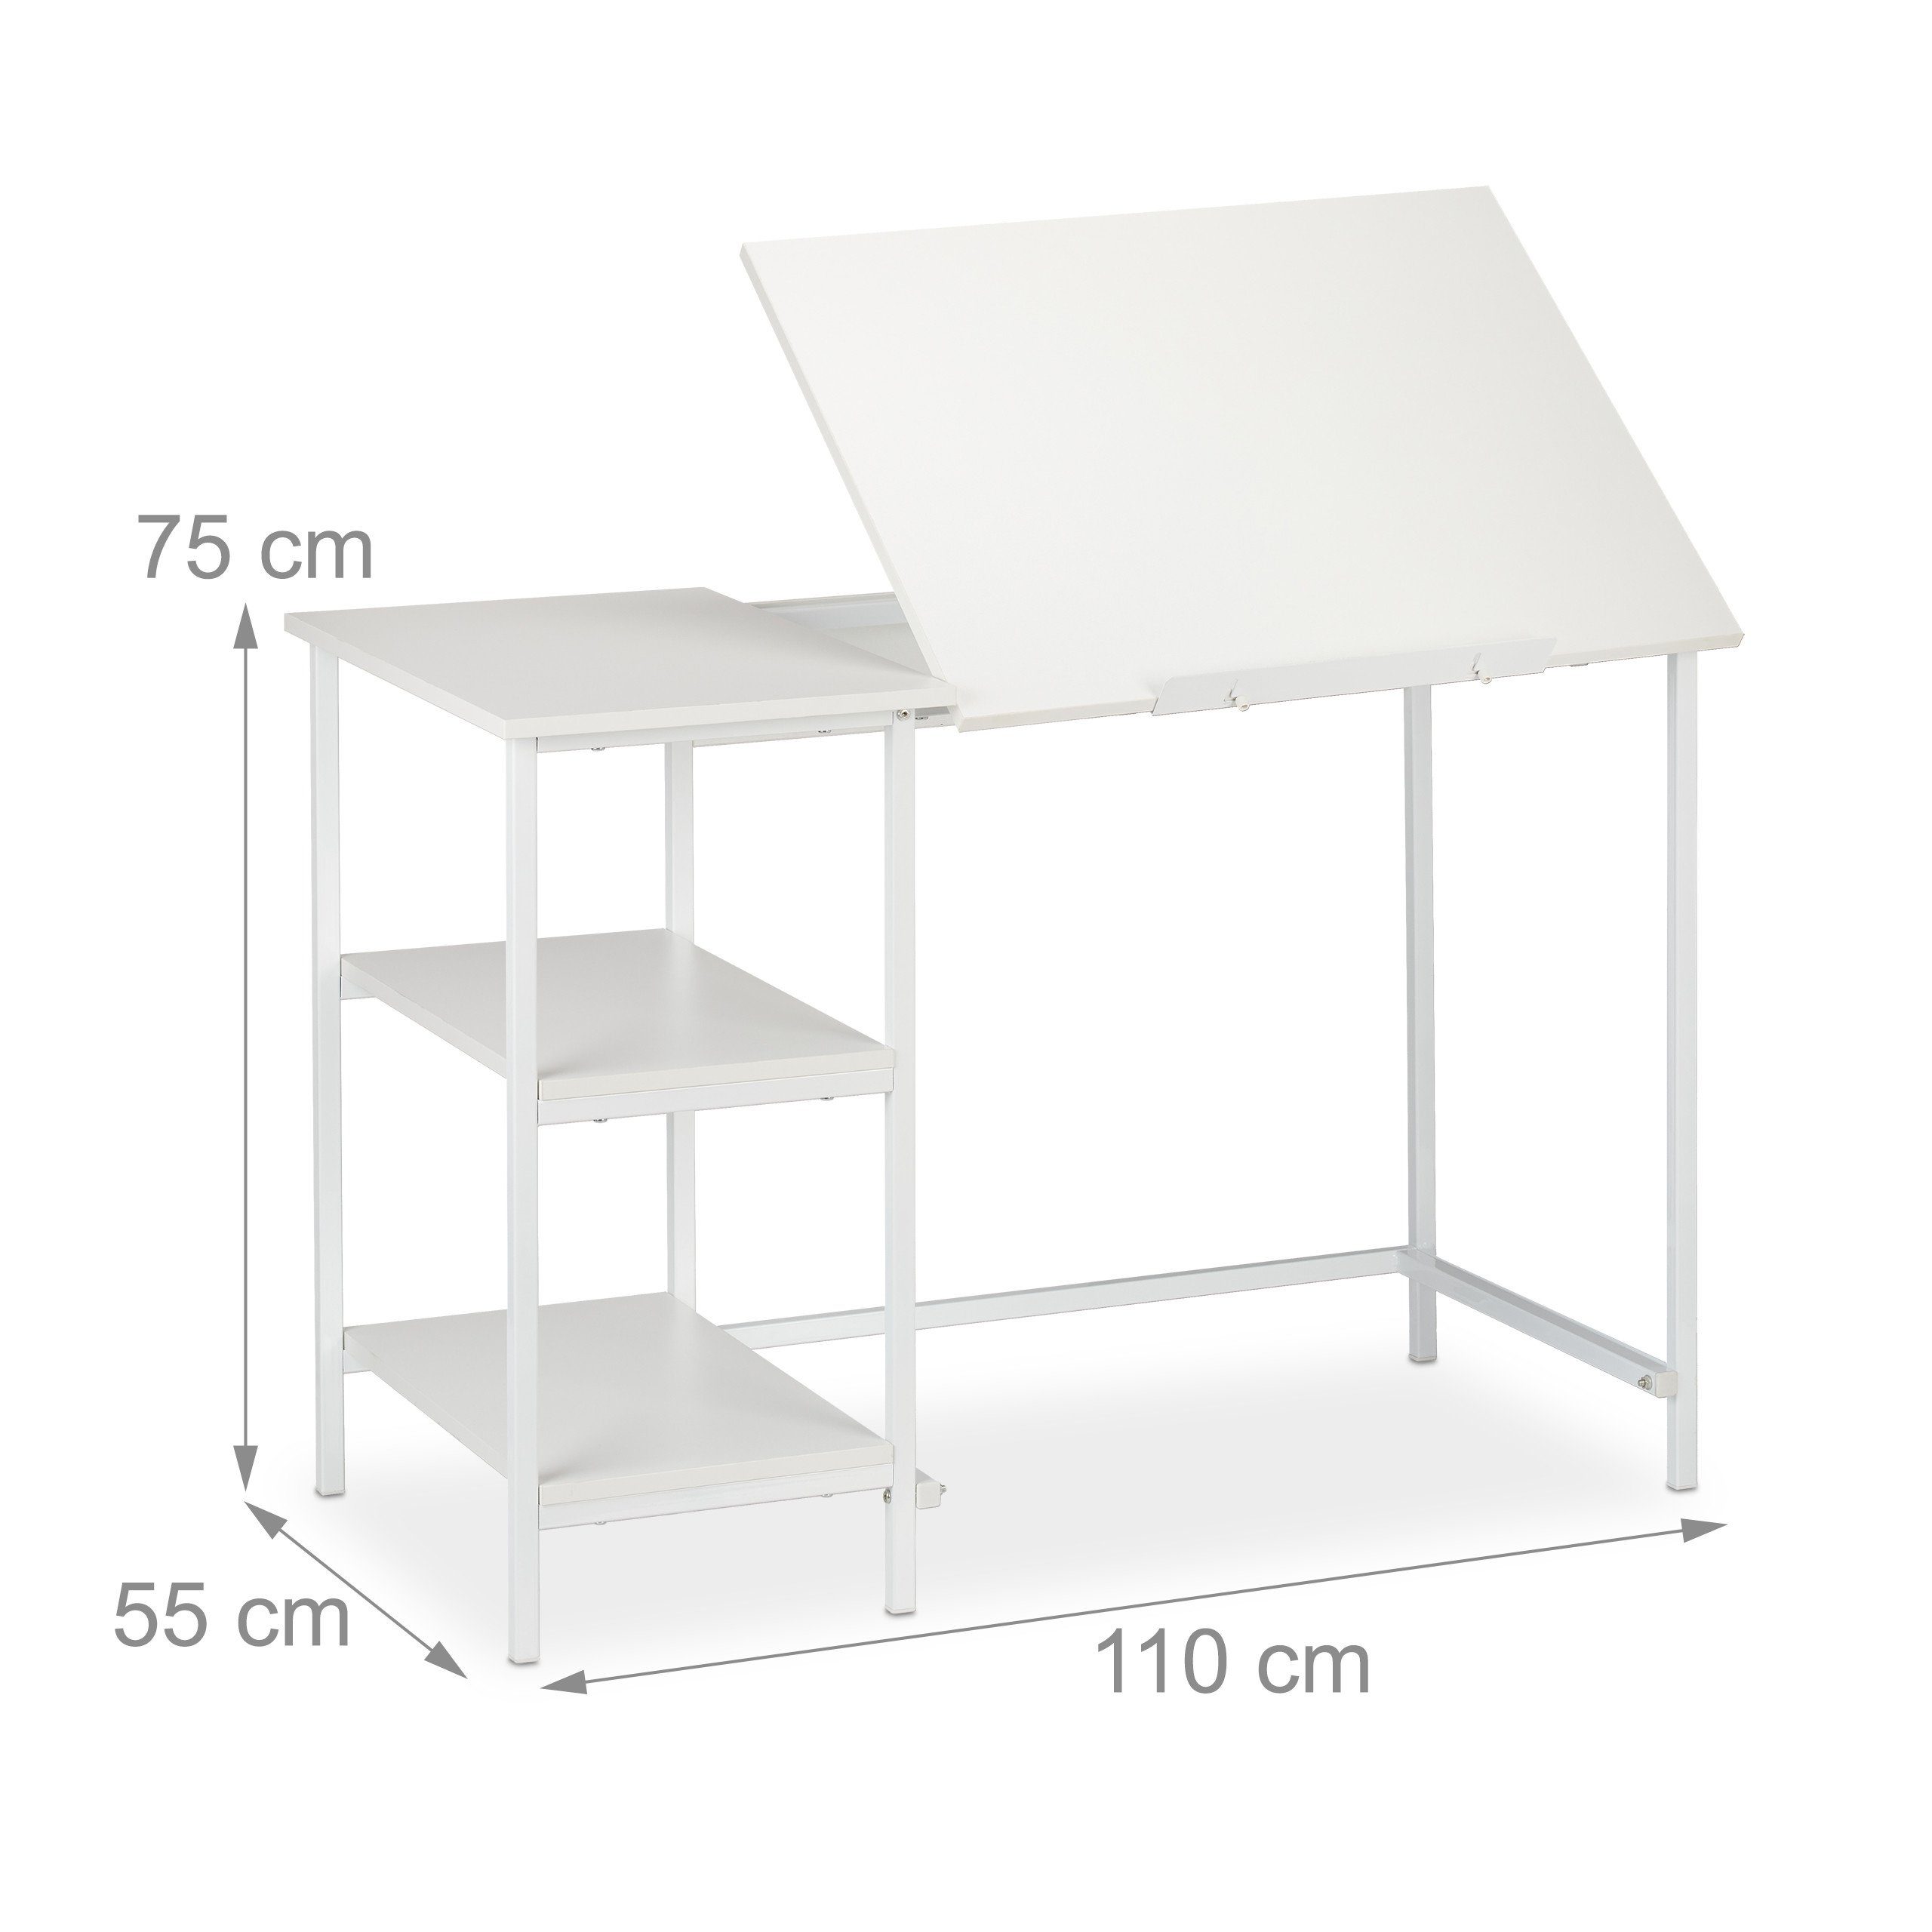 Weiß 3 relaxdays Schreibtisch mit / Ablagen, Weiß Schreibtisch neigbar